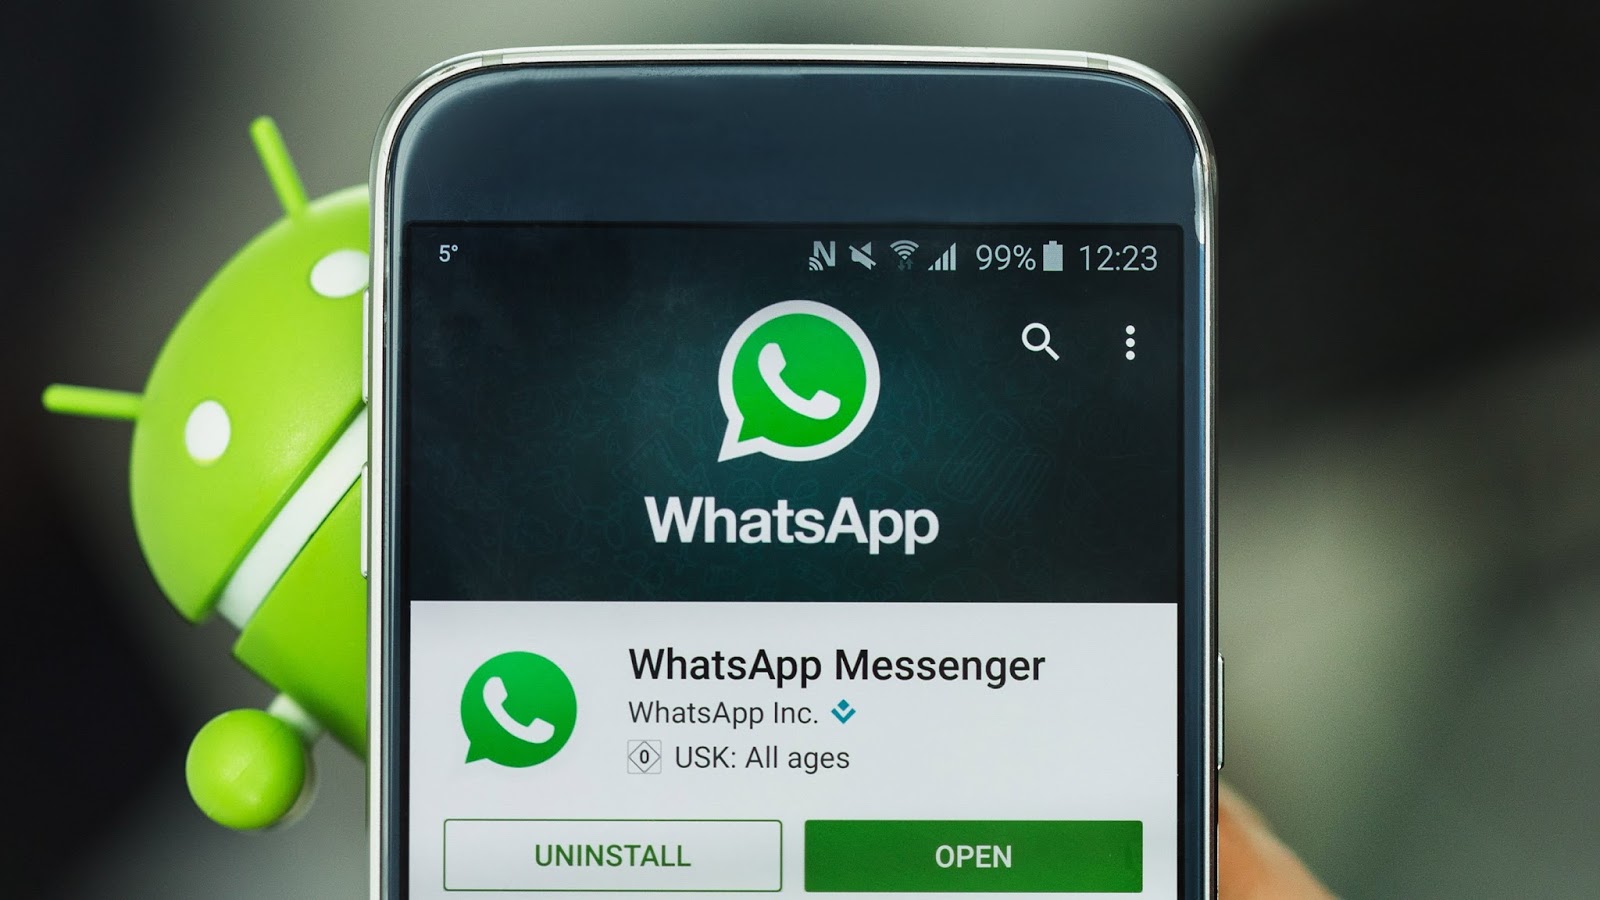 Logiciel Espion Whatsapp – Présentation